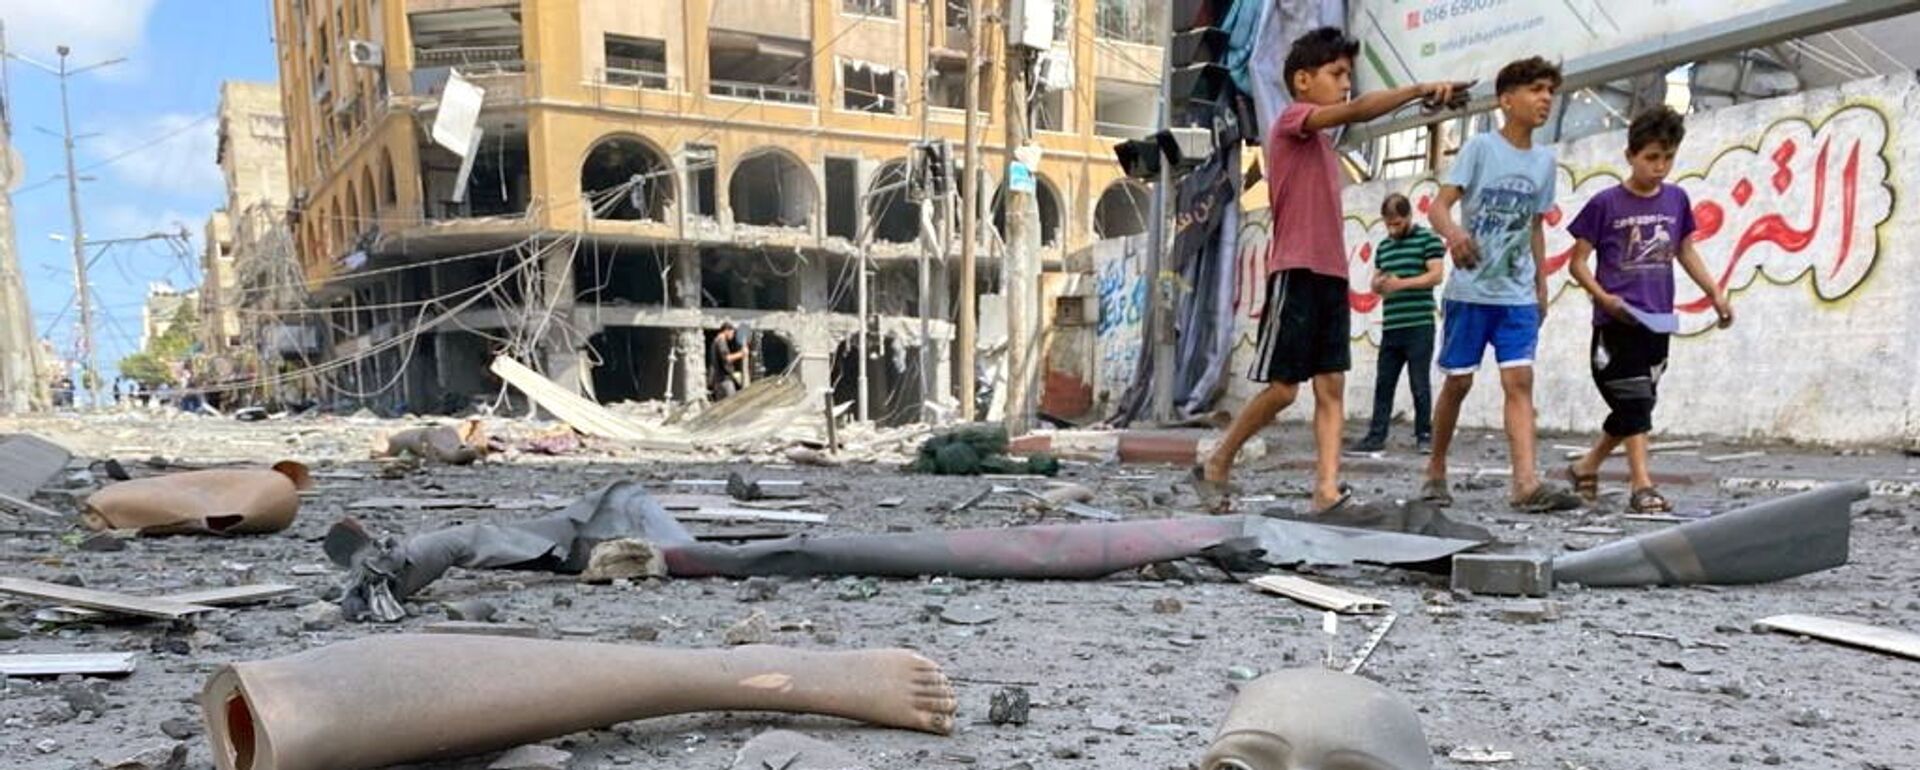 Части сломанного манекена лежат на земле возле здания, пострадавшего от ударов израильской авиации во время вспышки израильско-палестинского конфликта, Газа - Sputnik Mundo, 1920, 16.05.2021